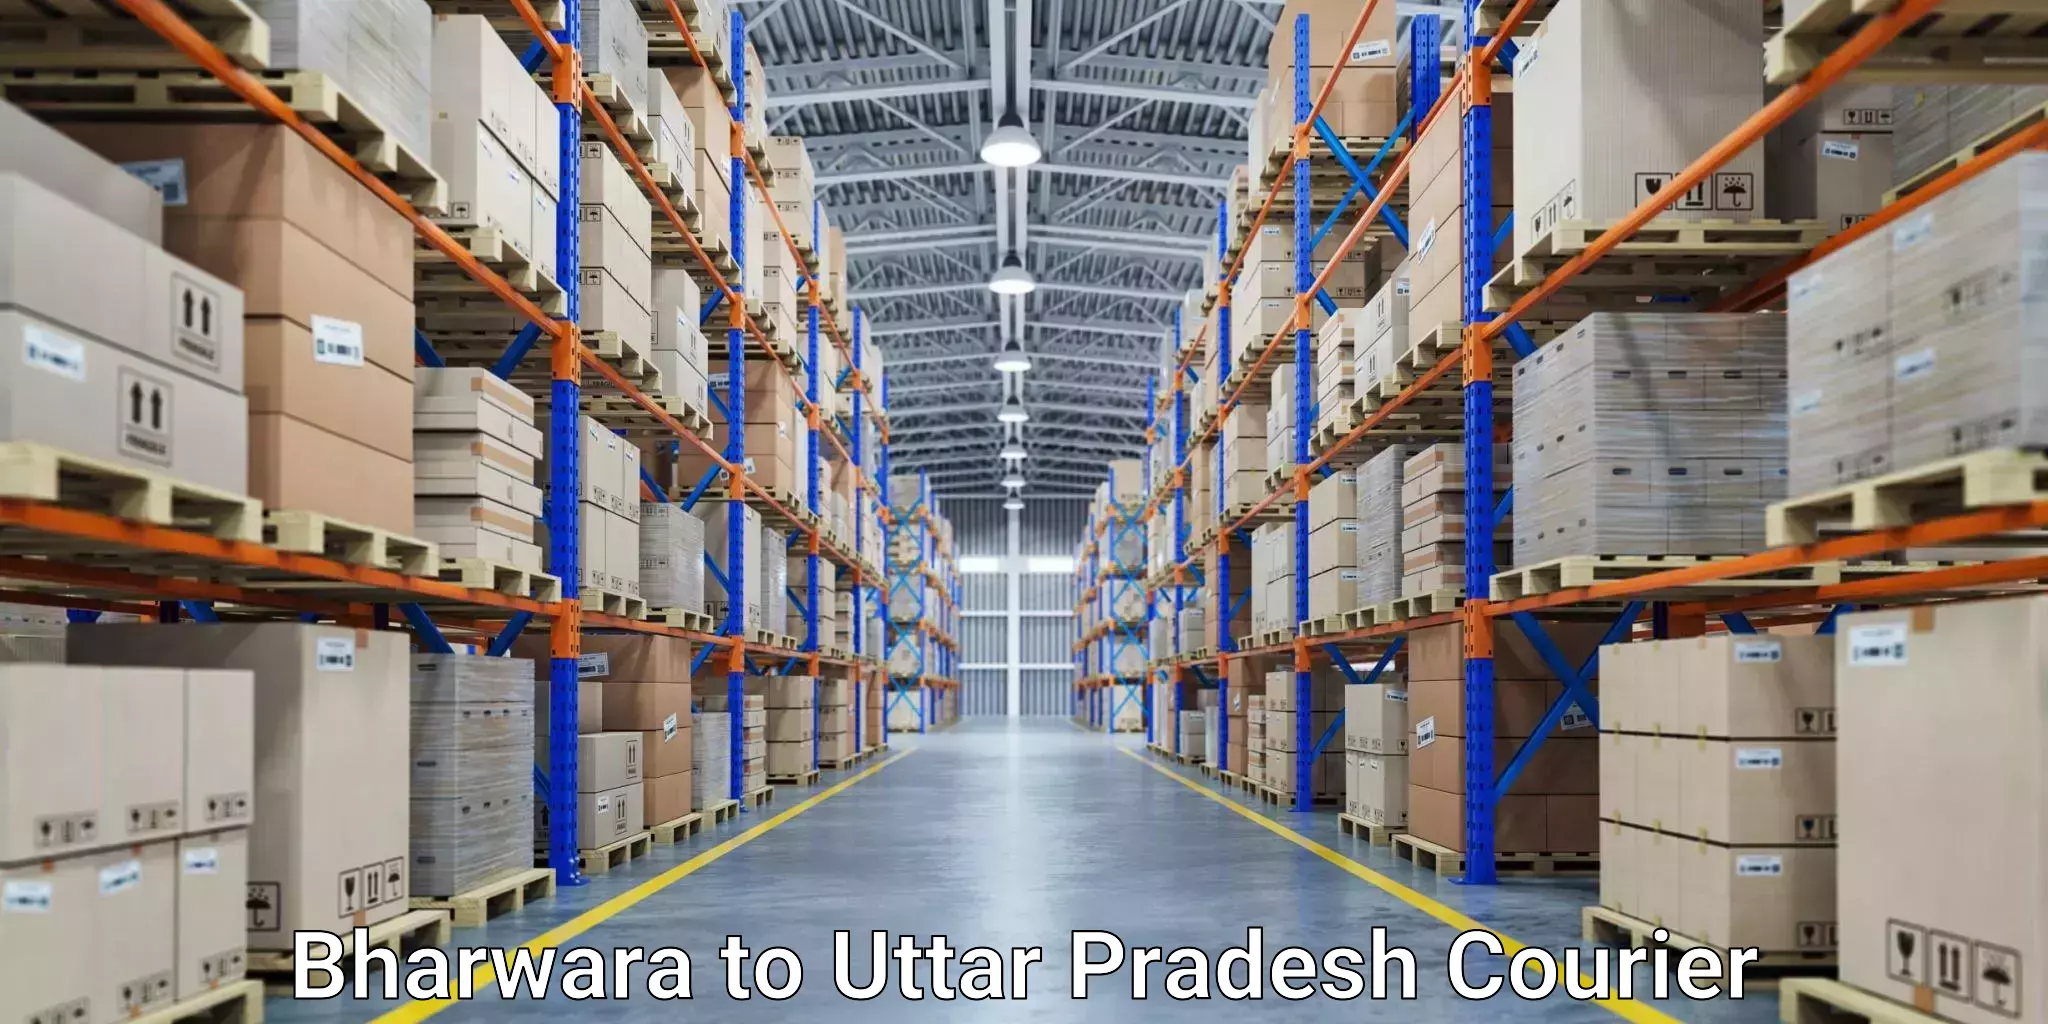 Cargo courier service Bharwara to Aligarh